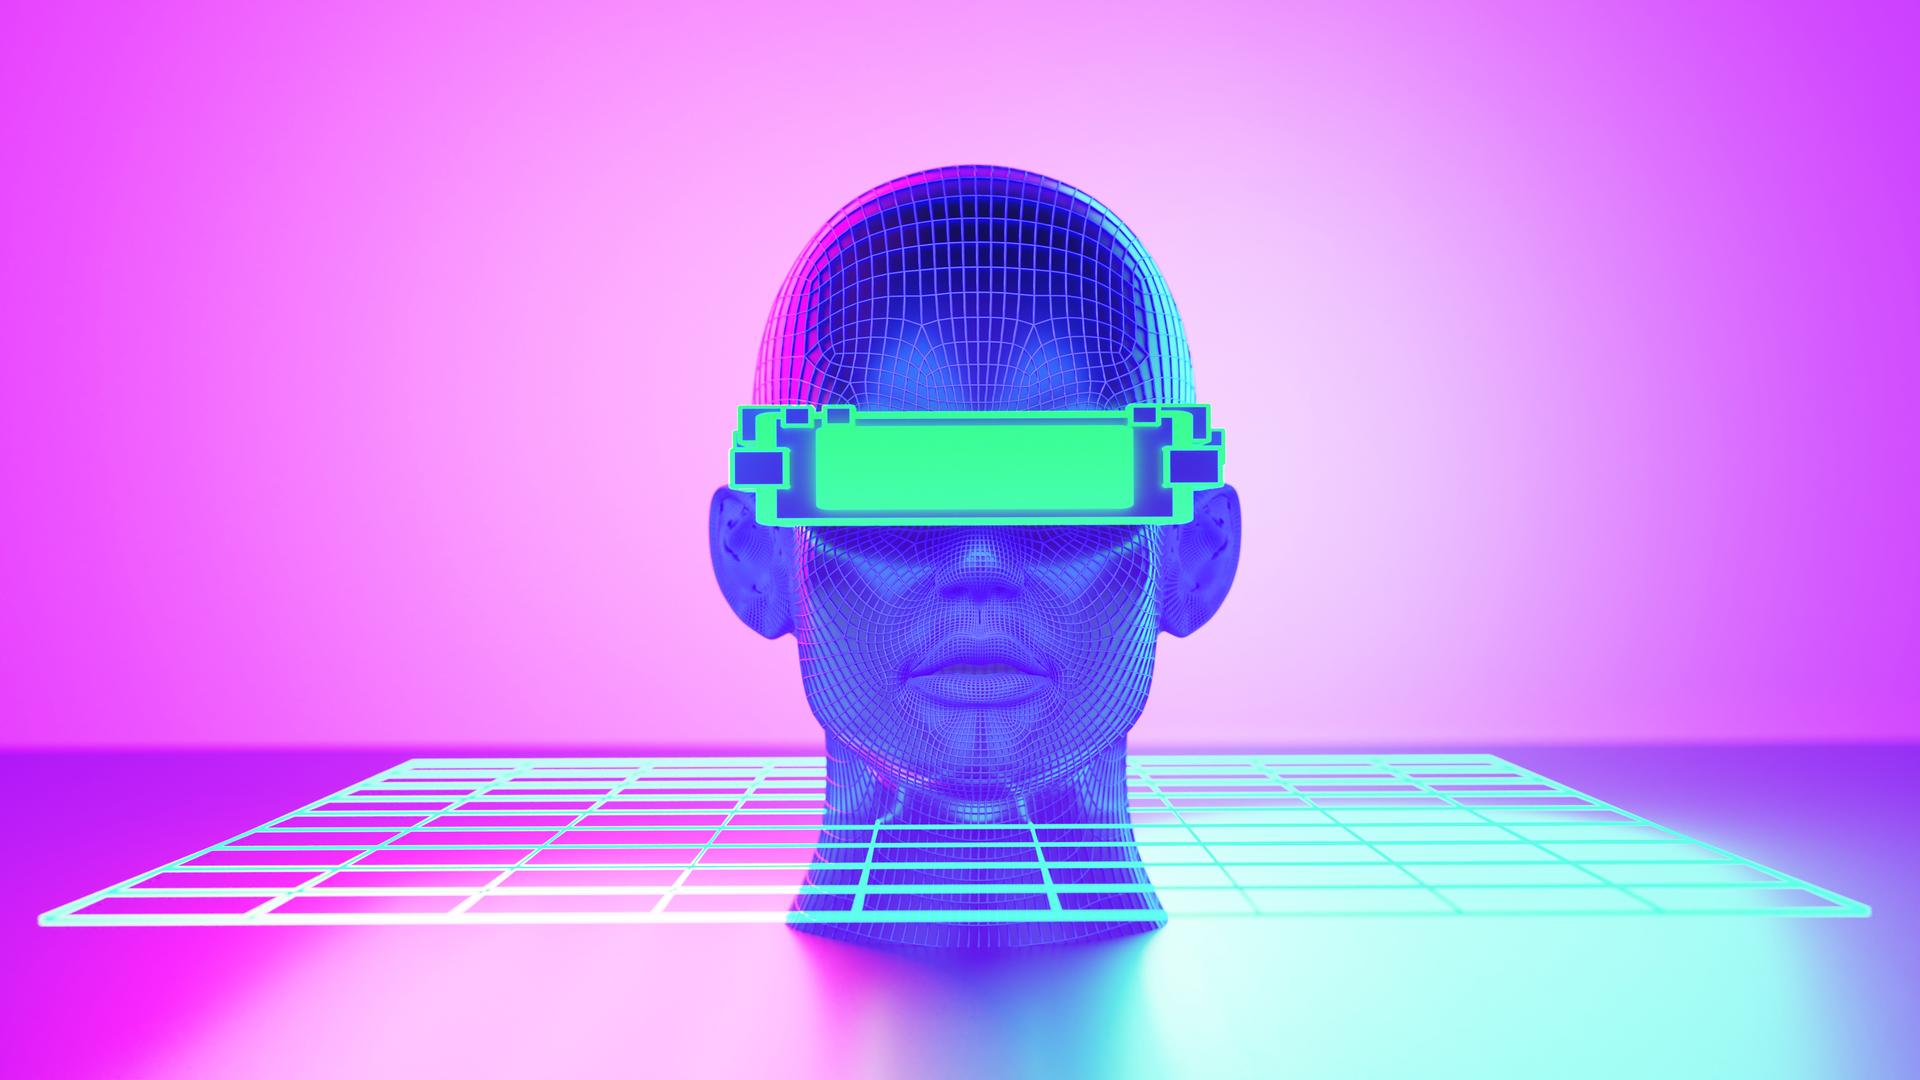 Grafik eines gleichzeitig menschlich und artifizell anmutenden Kopfes vor pink-lilafarbenem Hintergrund. Der Kopf steckt in einer Art Raster, vor der Augen etwas wie ein Balken oder eine VR-Brille.